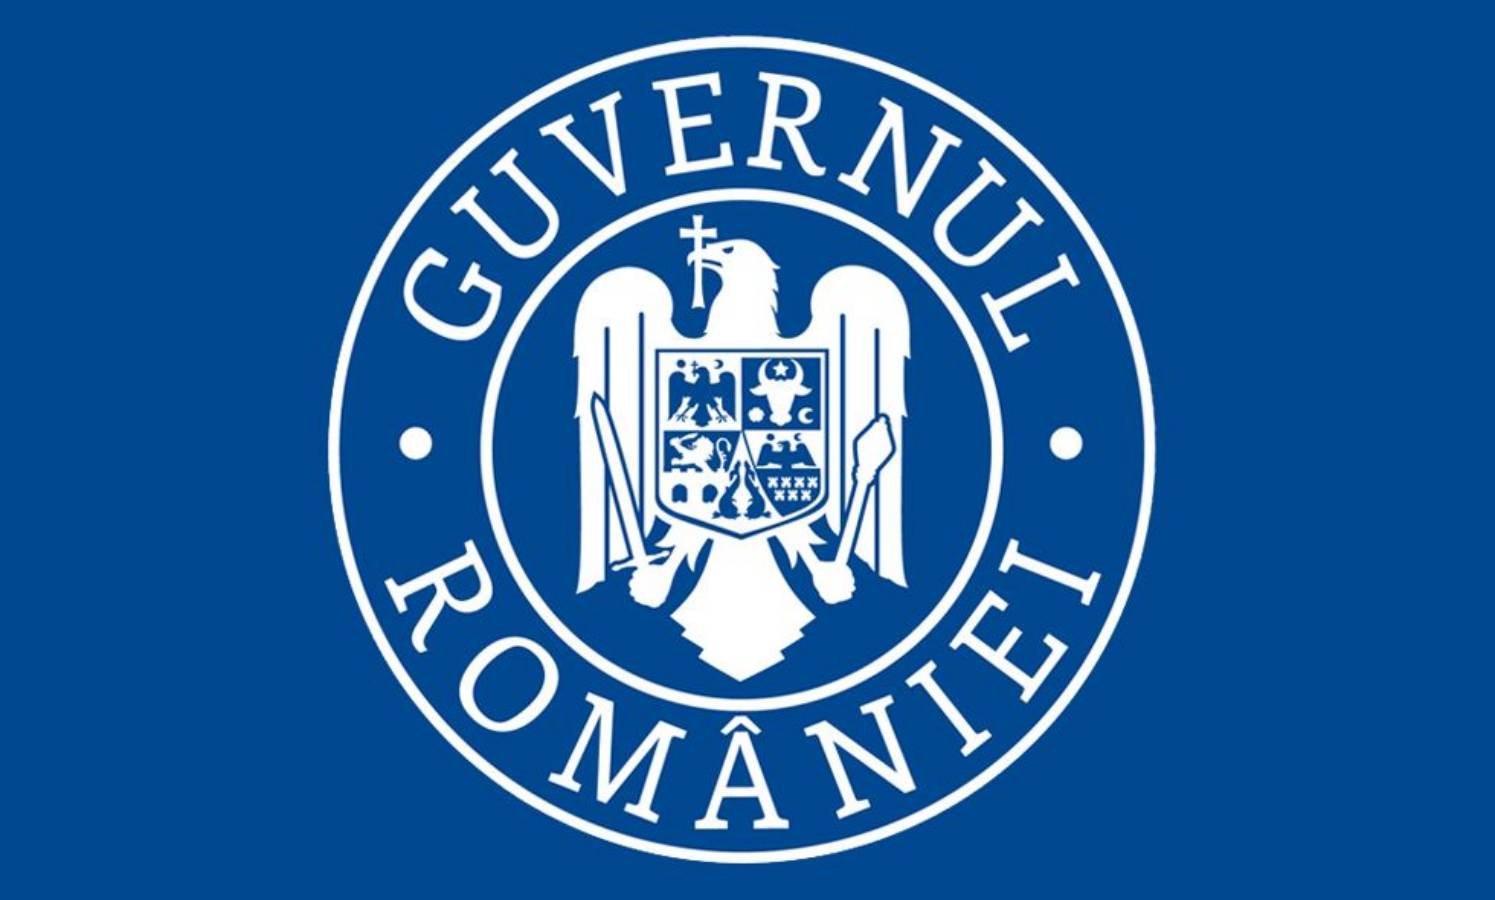 Vestea Guvernul Romaniei normalitate